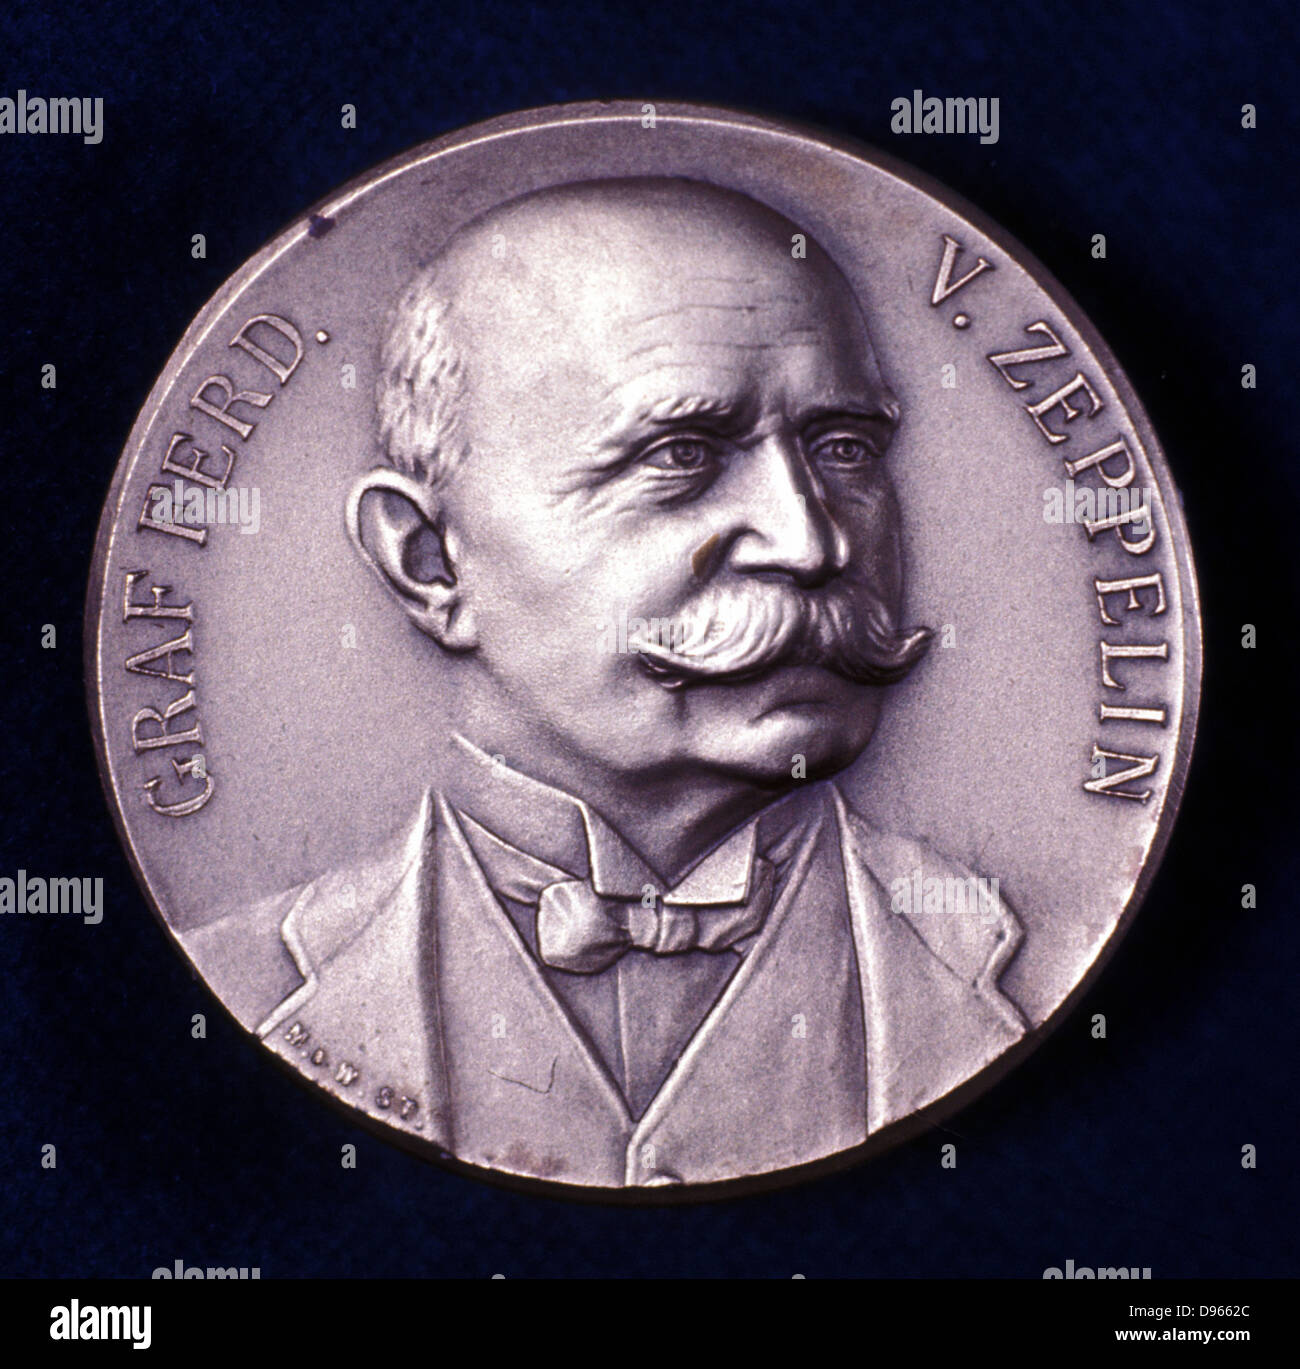 Comte Ferdinand von Zeppelin (1838-1917) Officier de l'armée allemande : dirigeables (dirigeables). Portrait de l'avers de la médaille commémorative. Banque D'Images